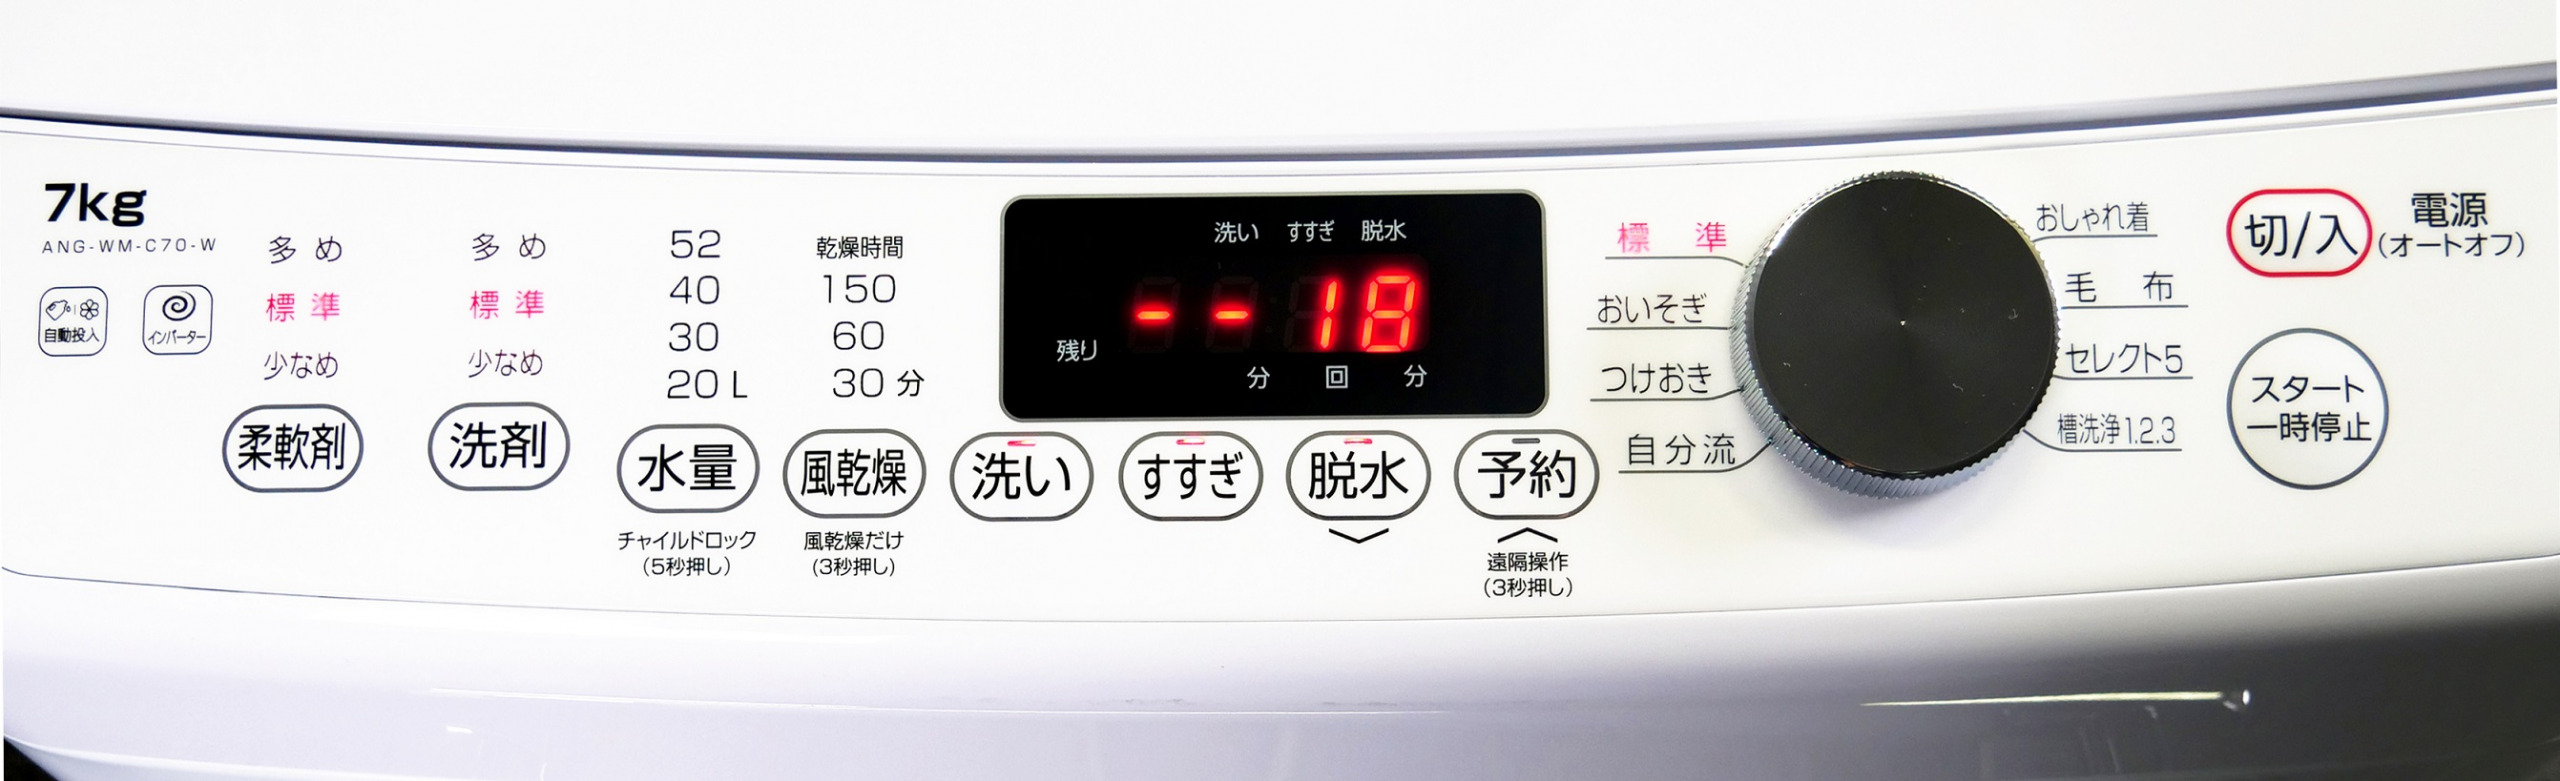 エディオン 洗濯機 ANG-WM-B70-W 20年製 7kg 自動洗剤 レトロ - 生活家電